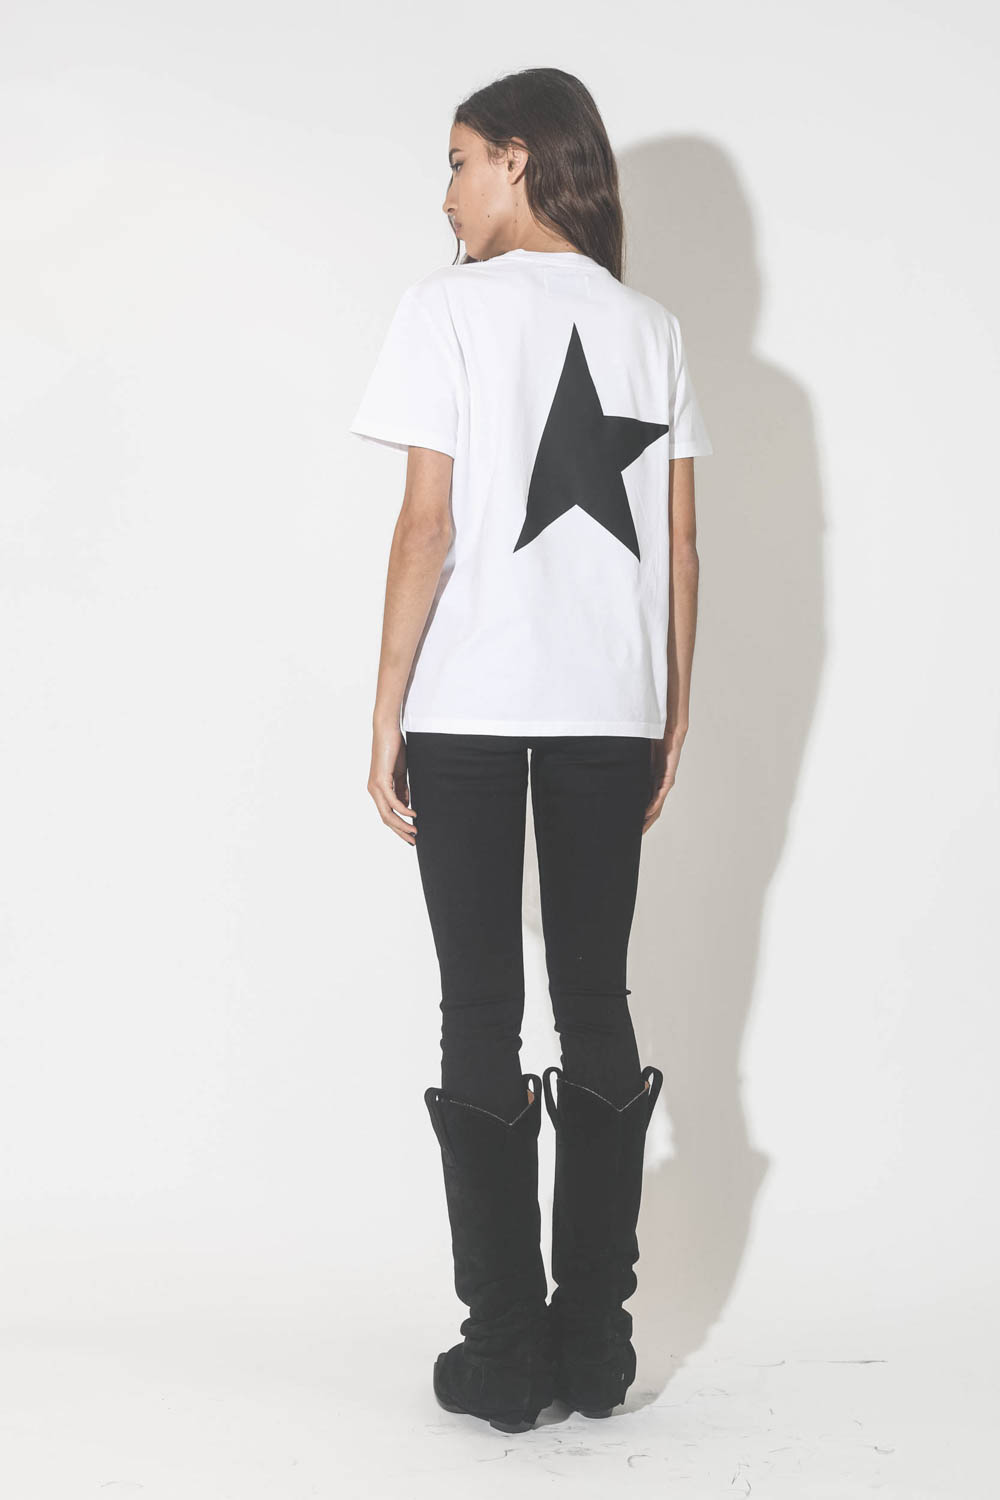 Jeans skinny taille haute en toile noir Deena Golden Goose. Porté avec un tee-shirt manches courtes blanc Logo étoile noir dans le dos.